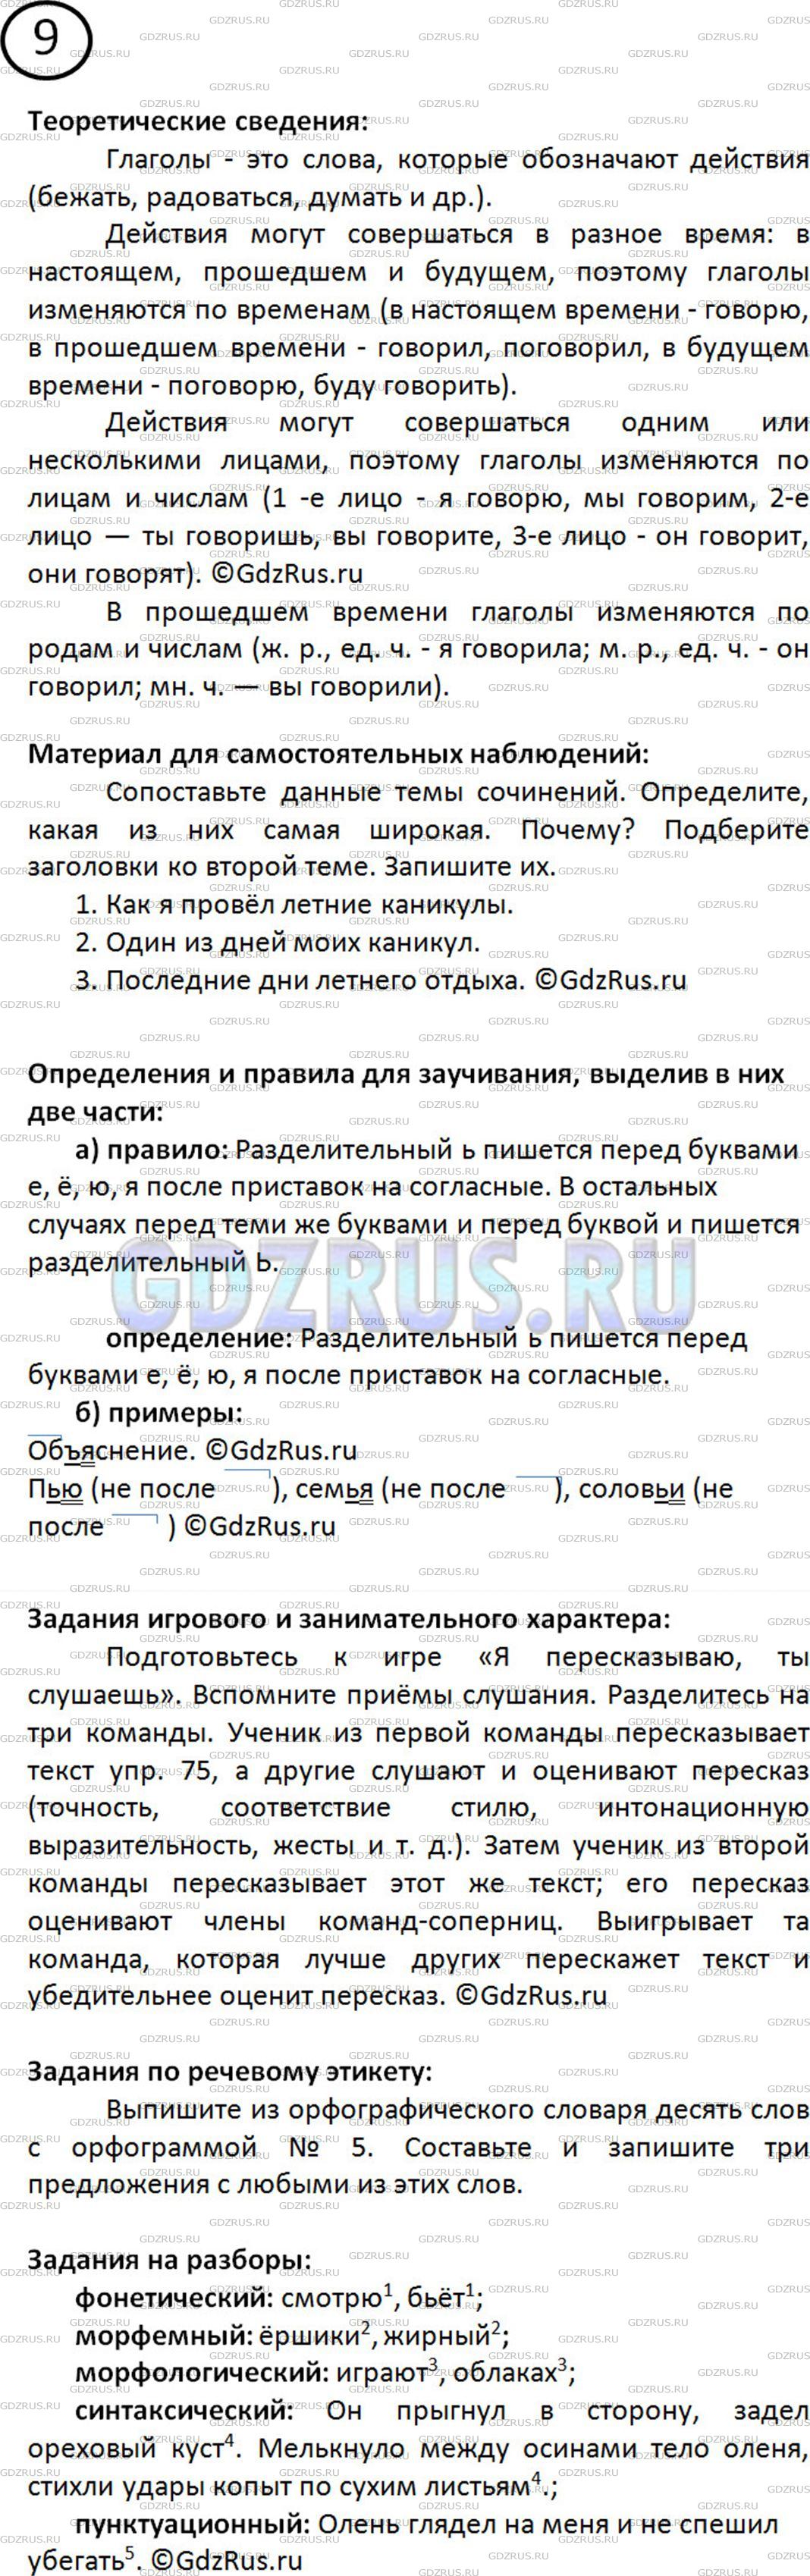 Фото решения 2: Номер №11 из ГДЗ по Русскому языку 5 класс: Ладыженская Т.А. 2019г.